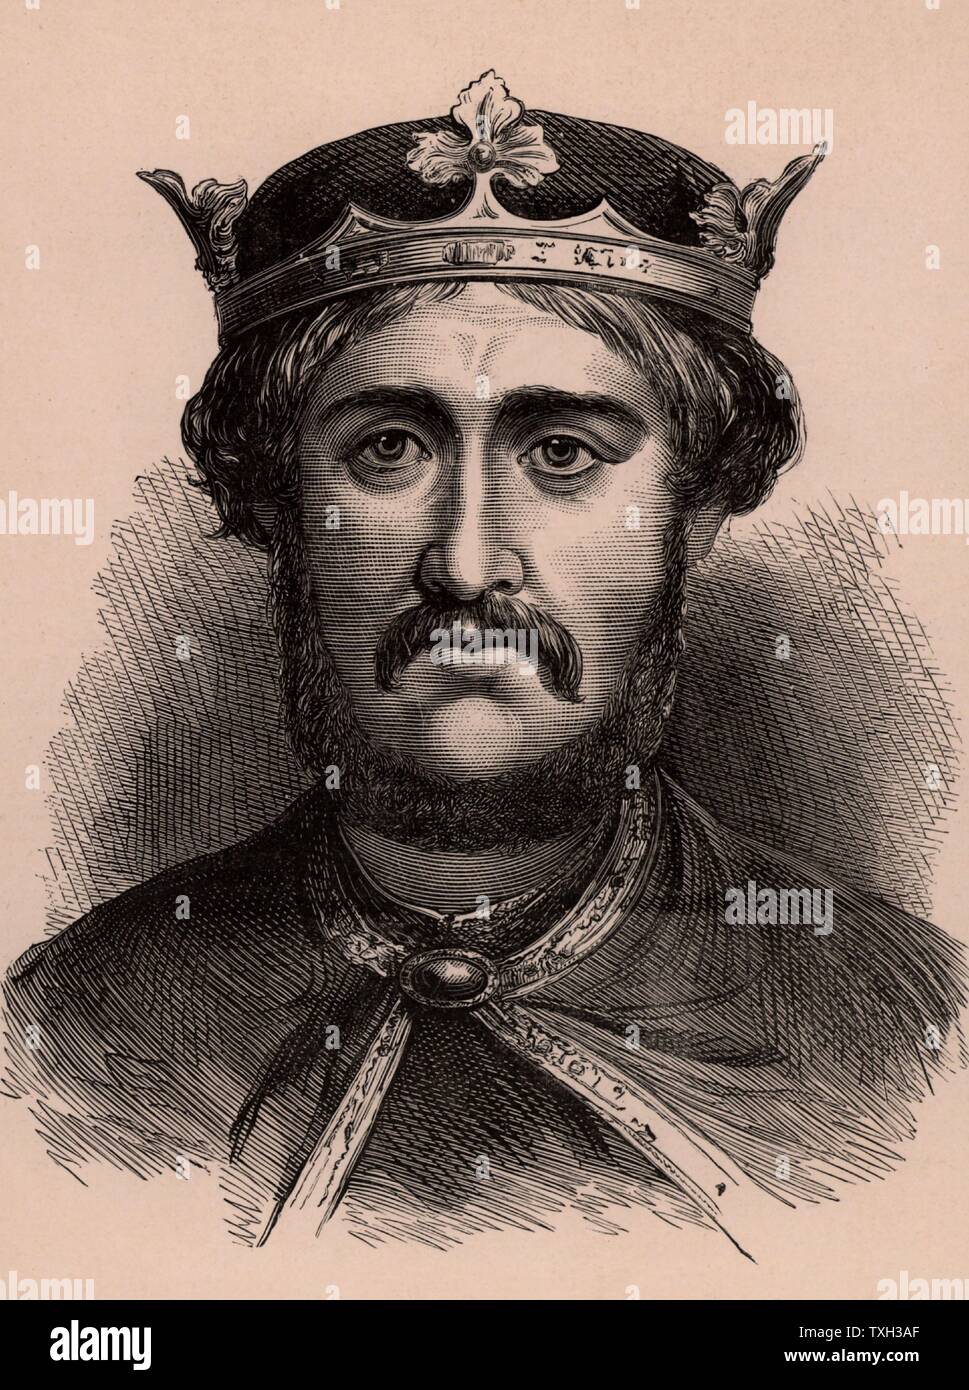 Richard I, Coeur de Lion (1157-99), re d'Inghilterra dal 1189. Egli era il figlio di Enrico II e di Eleonora di Aquitania e fu membro della dinastia Angioina. c.1900 incisione su legno Foto Stock